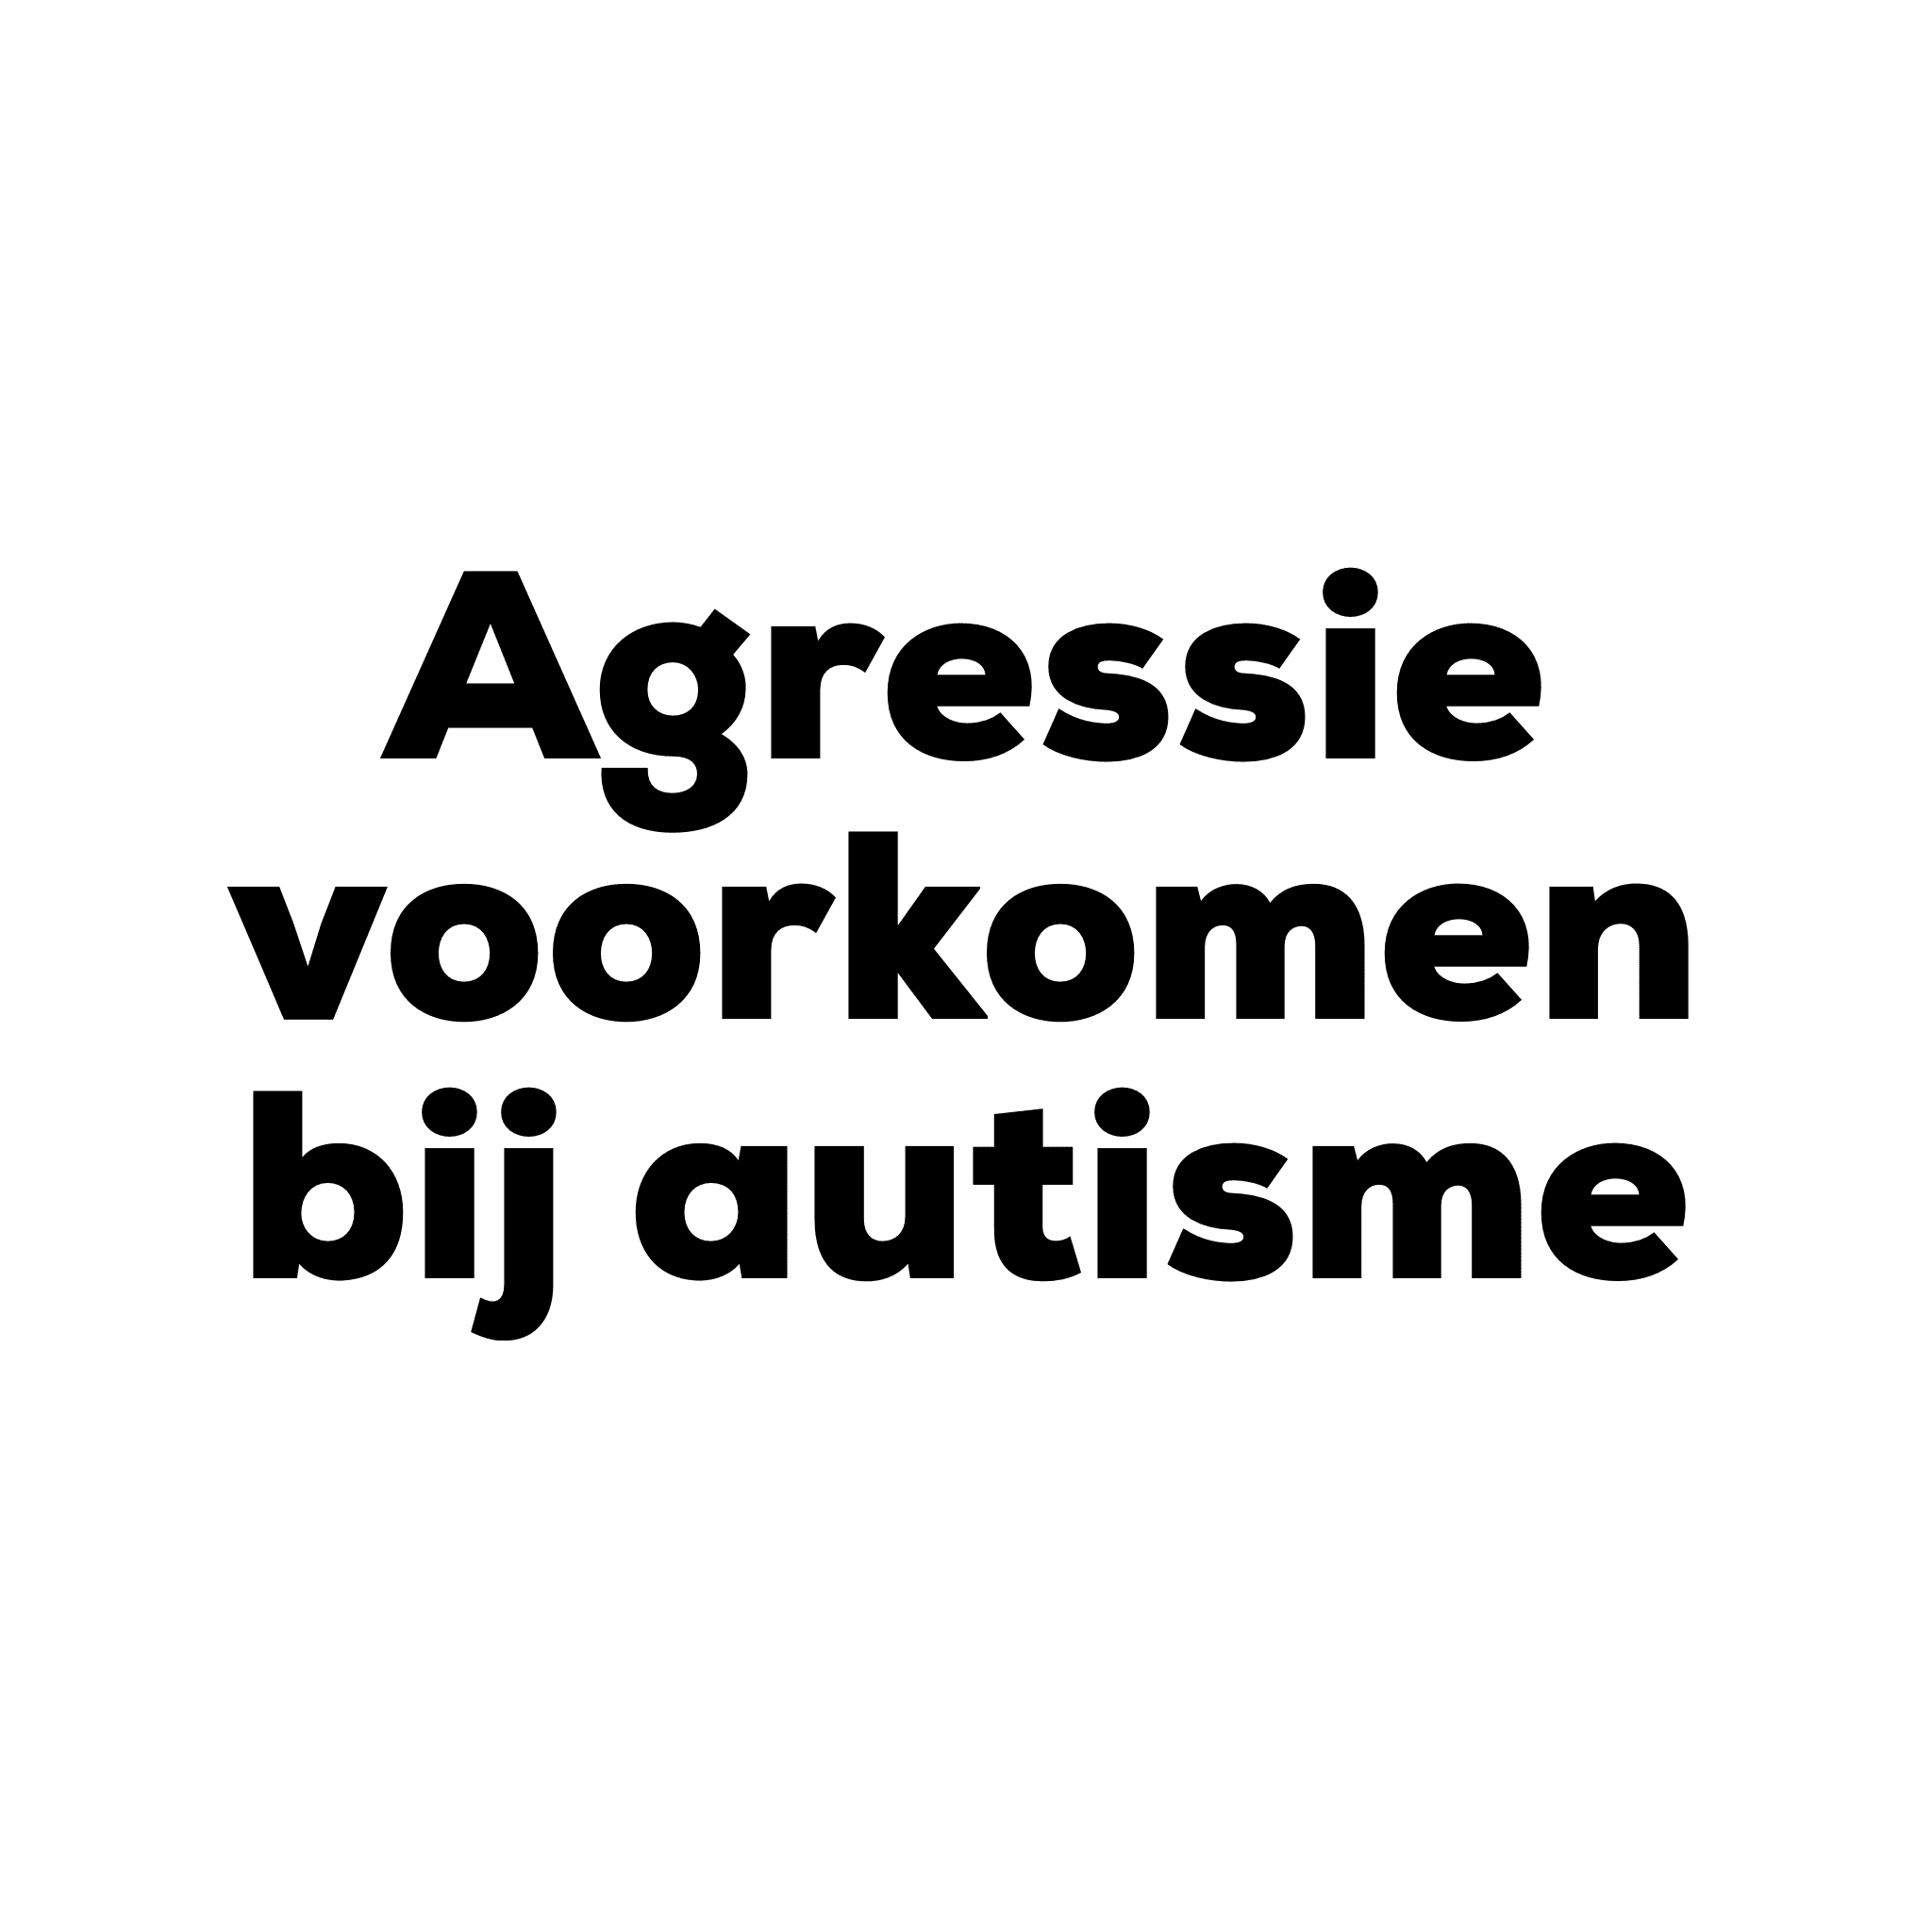 Workshop Agressie voorkomen bij autisme